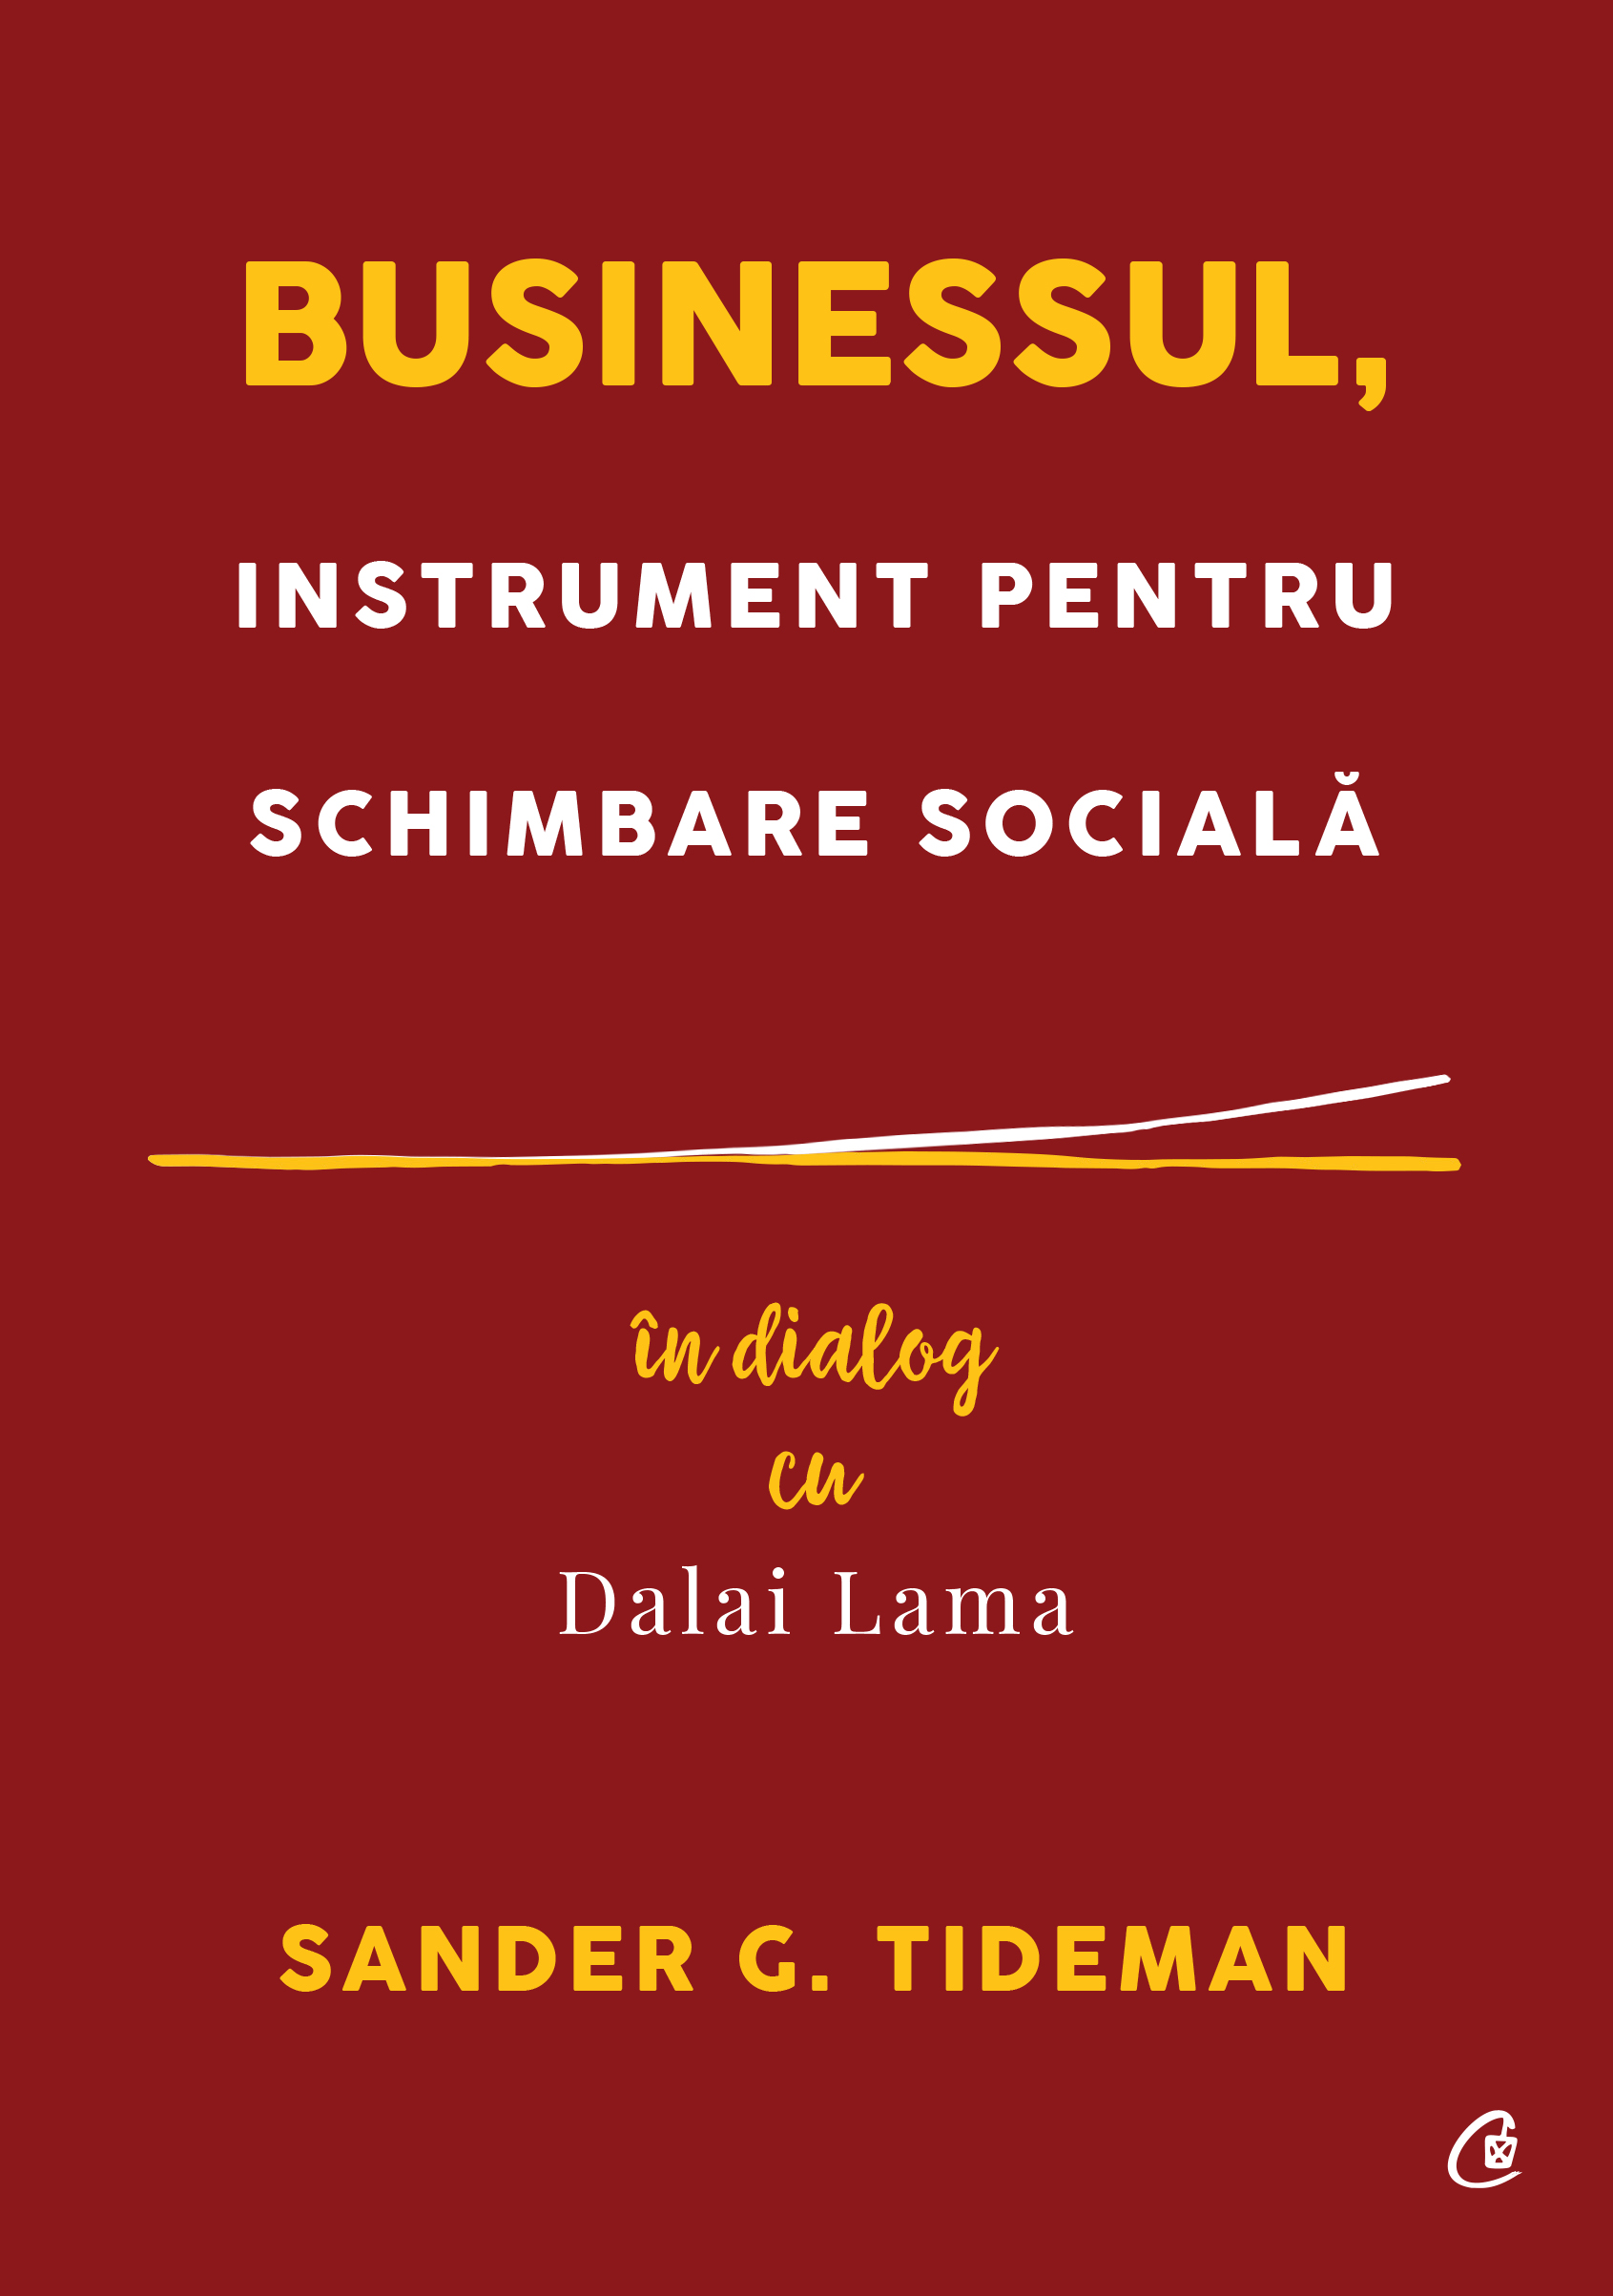 Businessul, instrument pentru schimbare sociala | Sander G. Tideman Businessul imagine 2022